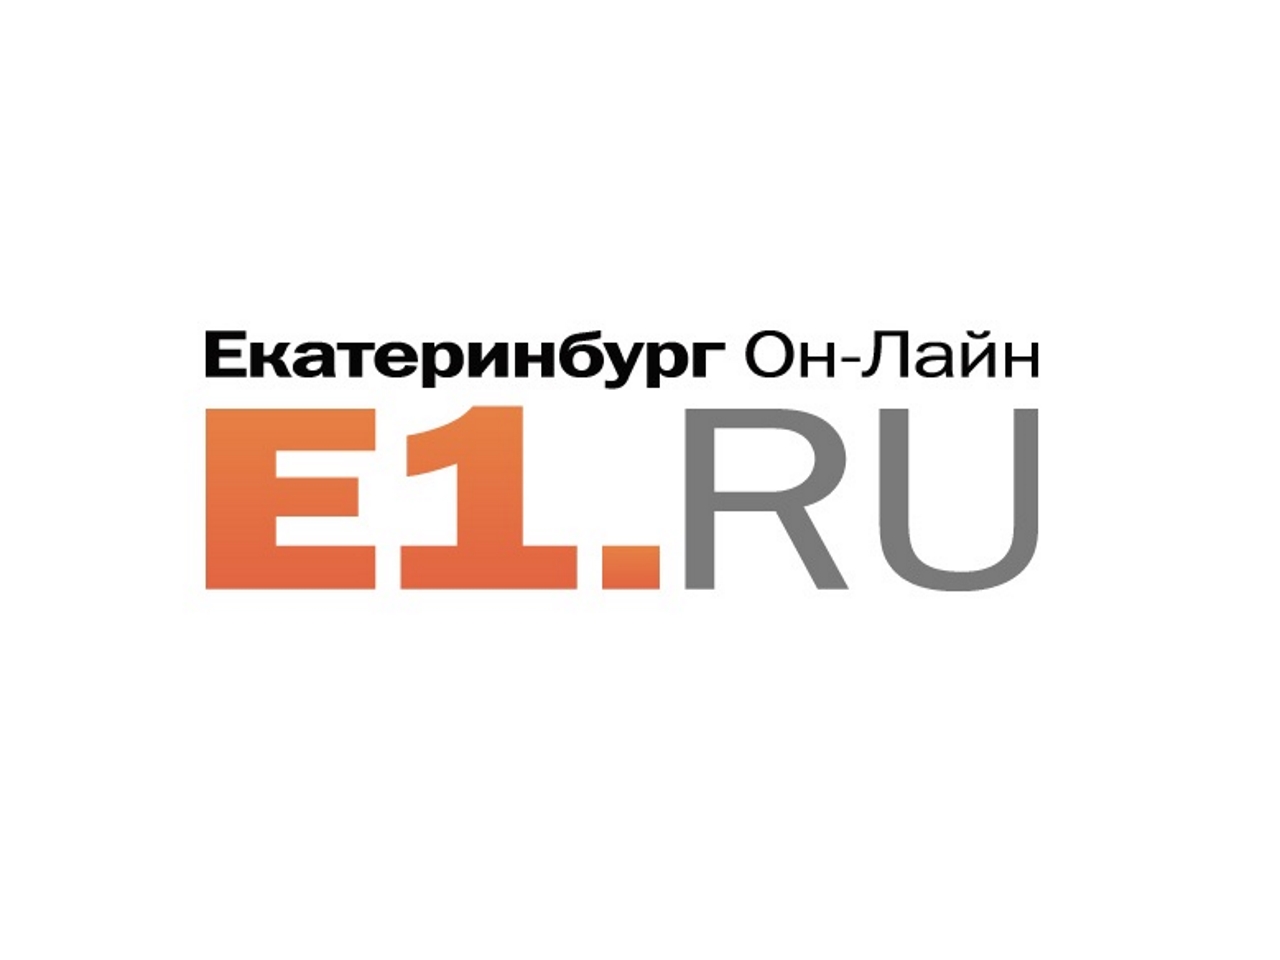 Second 1 ru. Е1. Е1 лого. Е1 Екатеринбург. Е1. Ру эмблема.